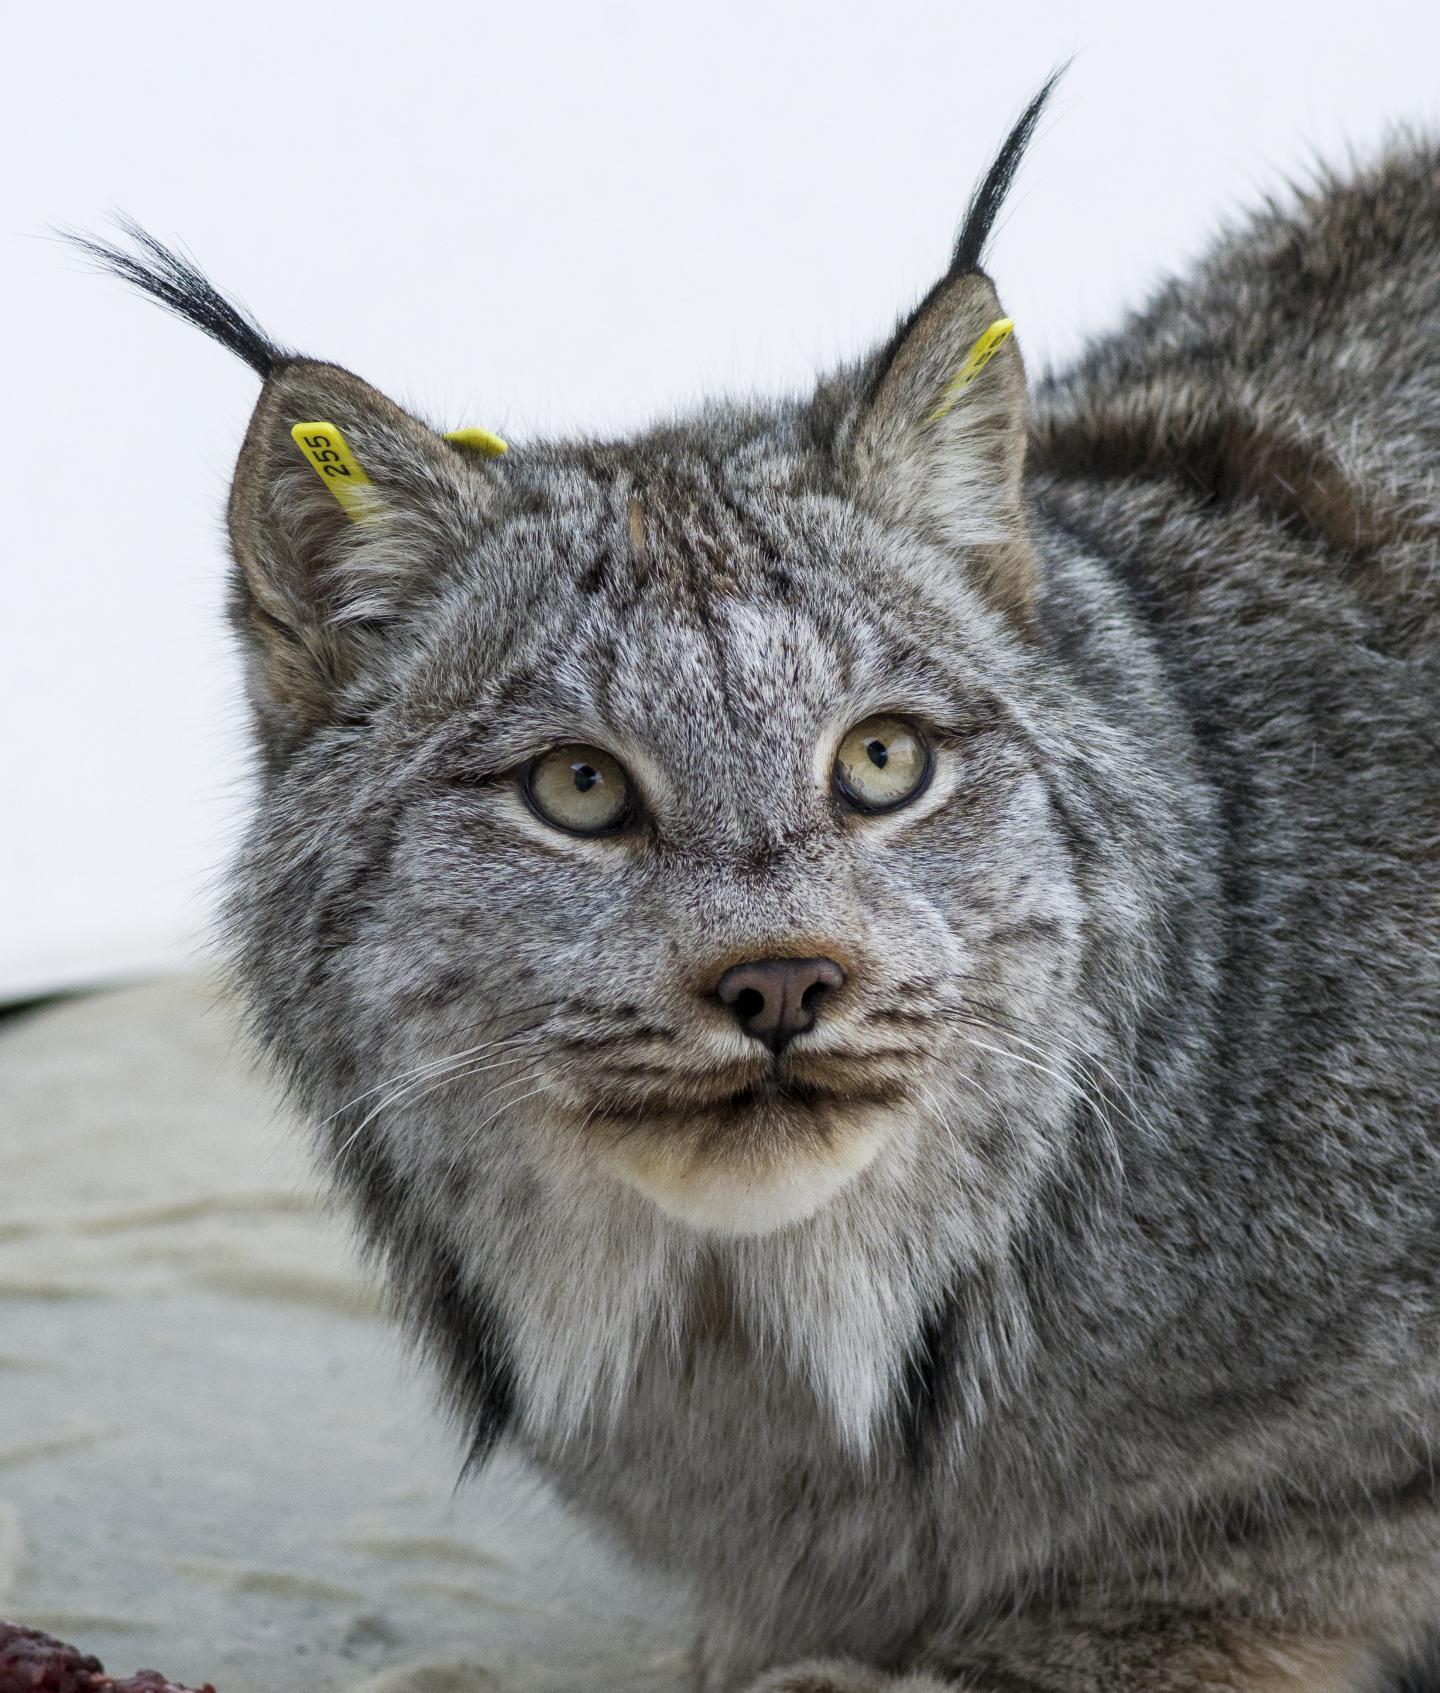 A Canada Lynx